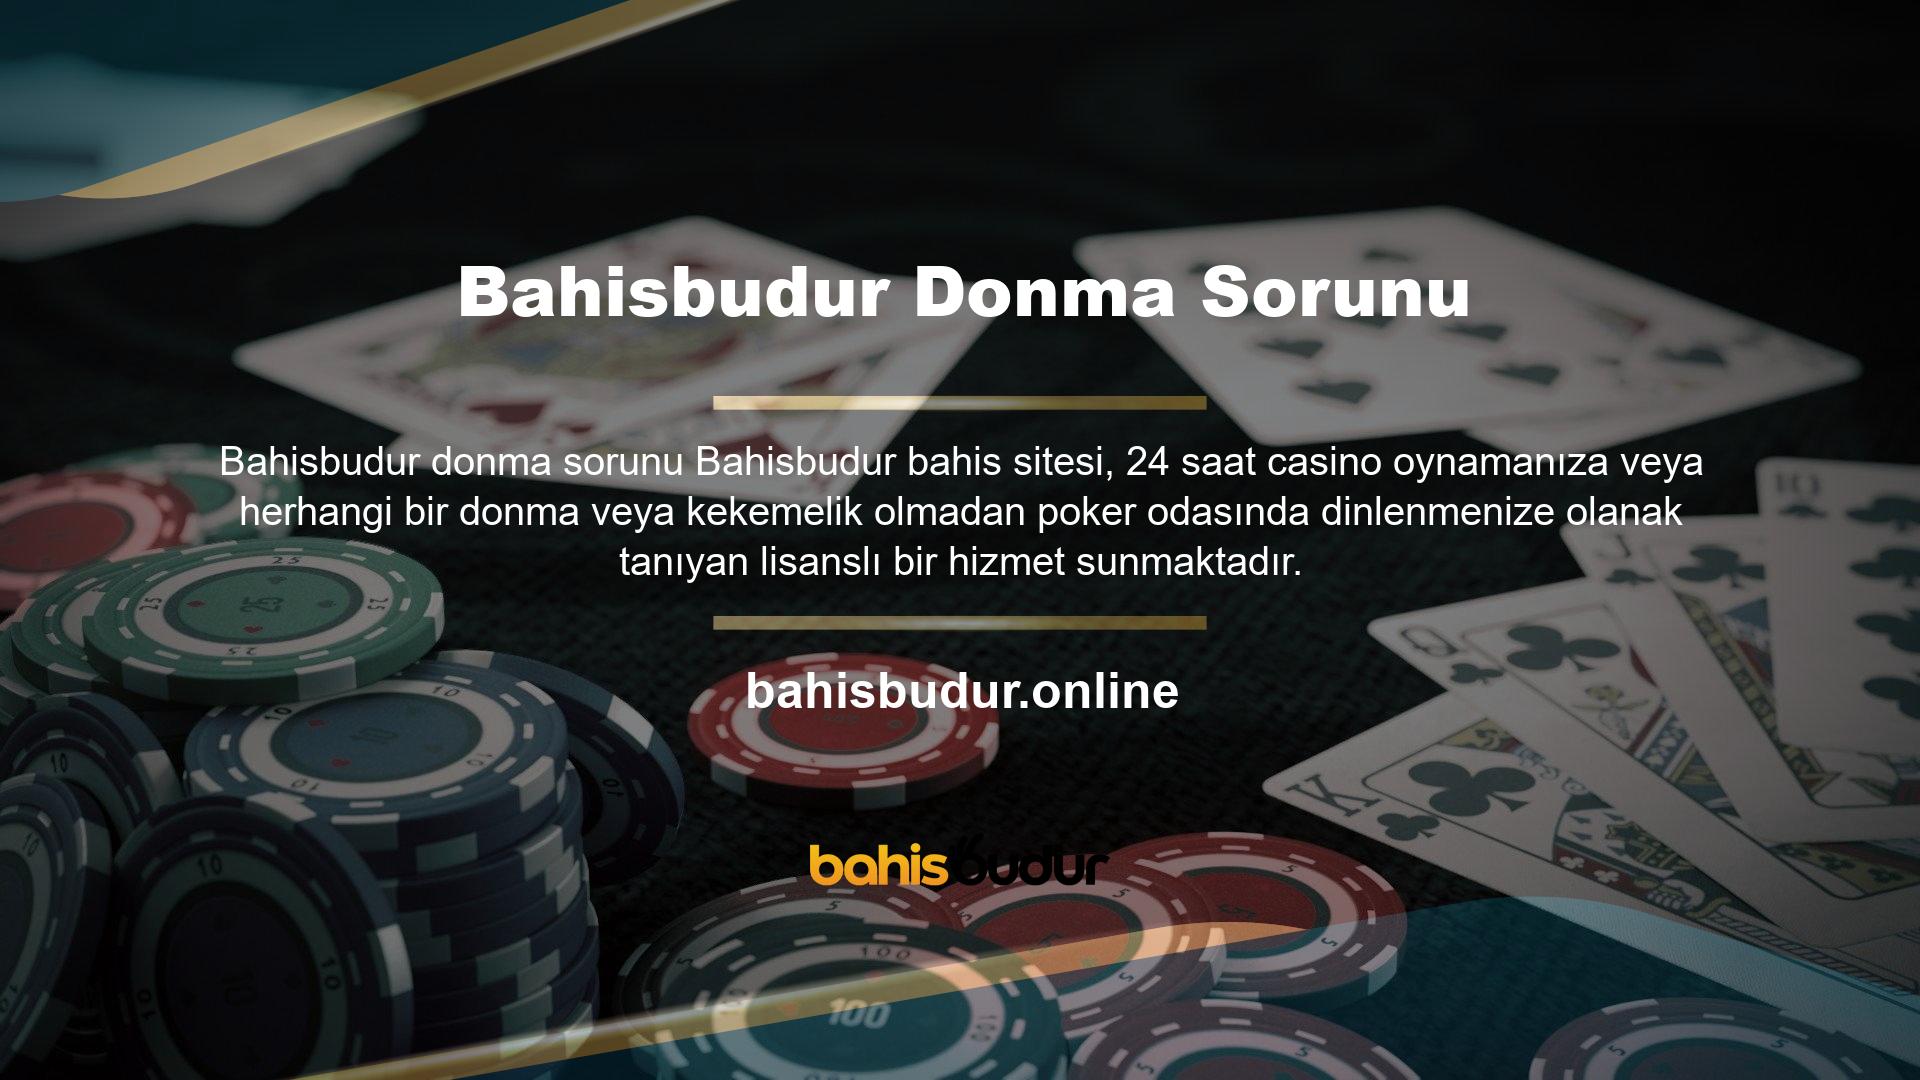 Bahisbudur Poker bölümünde yer alan Turkish Poker, Türk oyuncularla oynamanıza olanak sağlar